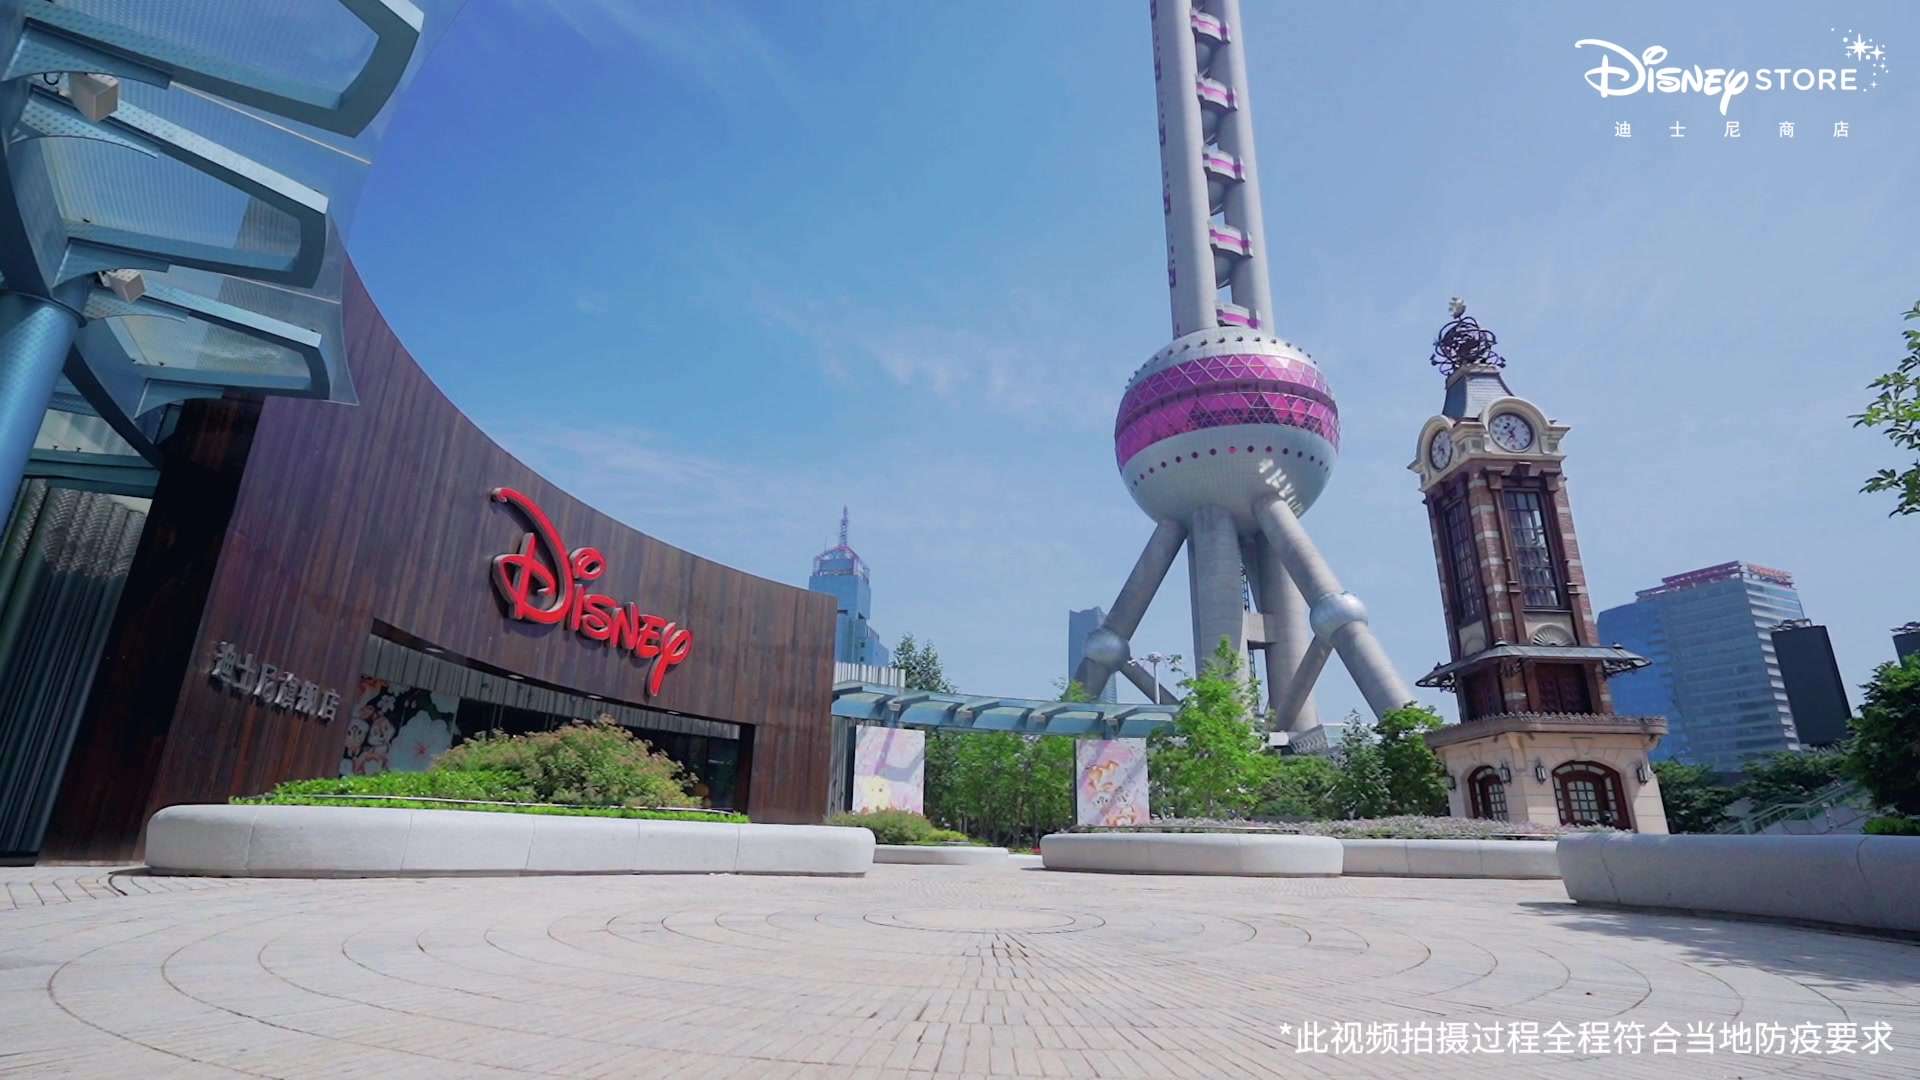 上海迪士尼商店案例